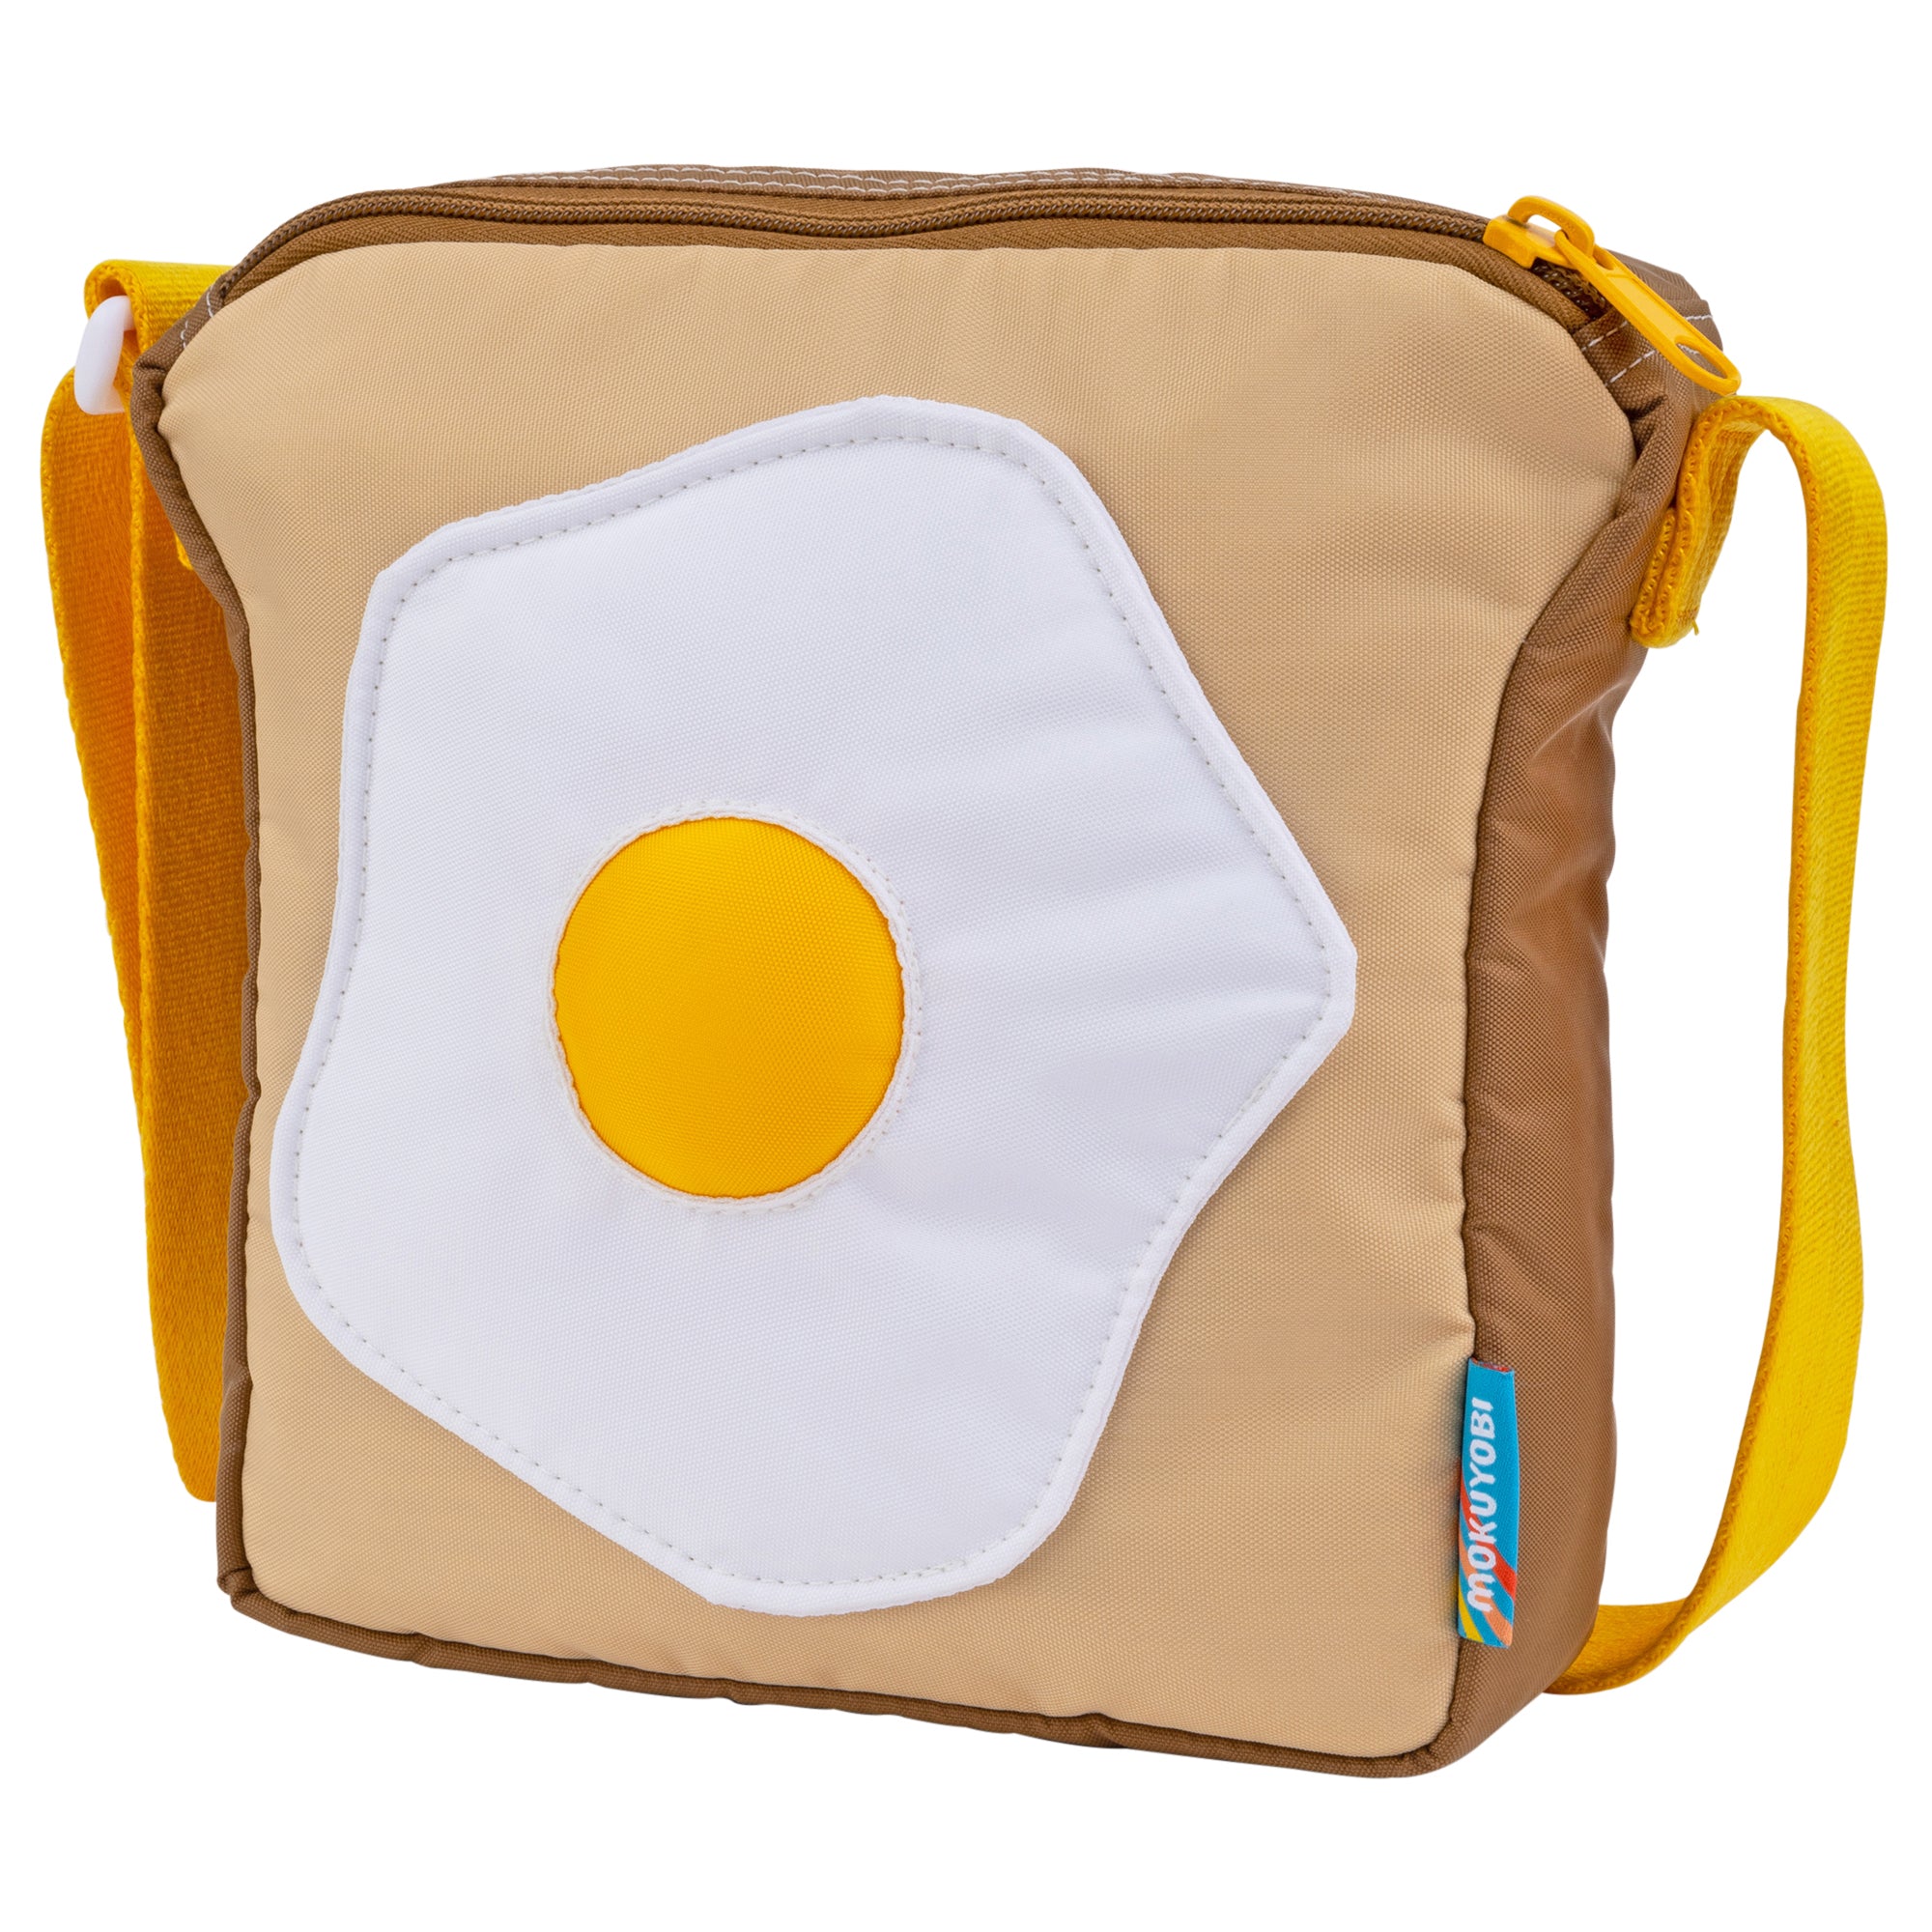 Egg sling bag  Shopee Philippines